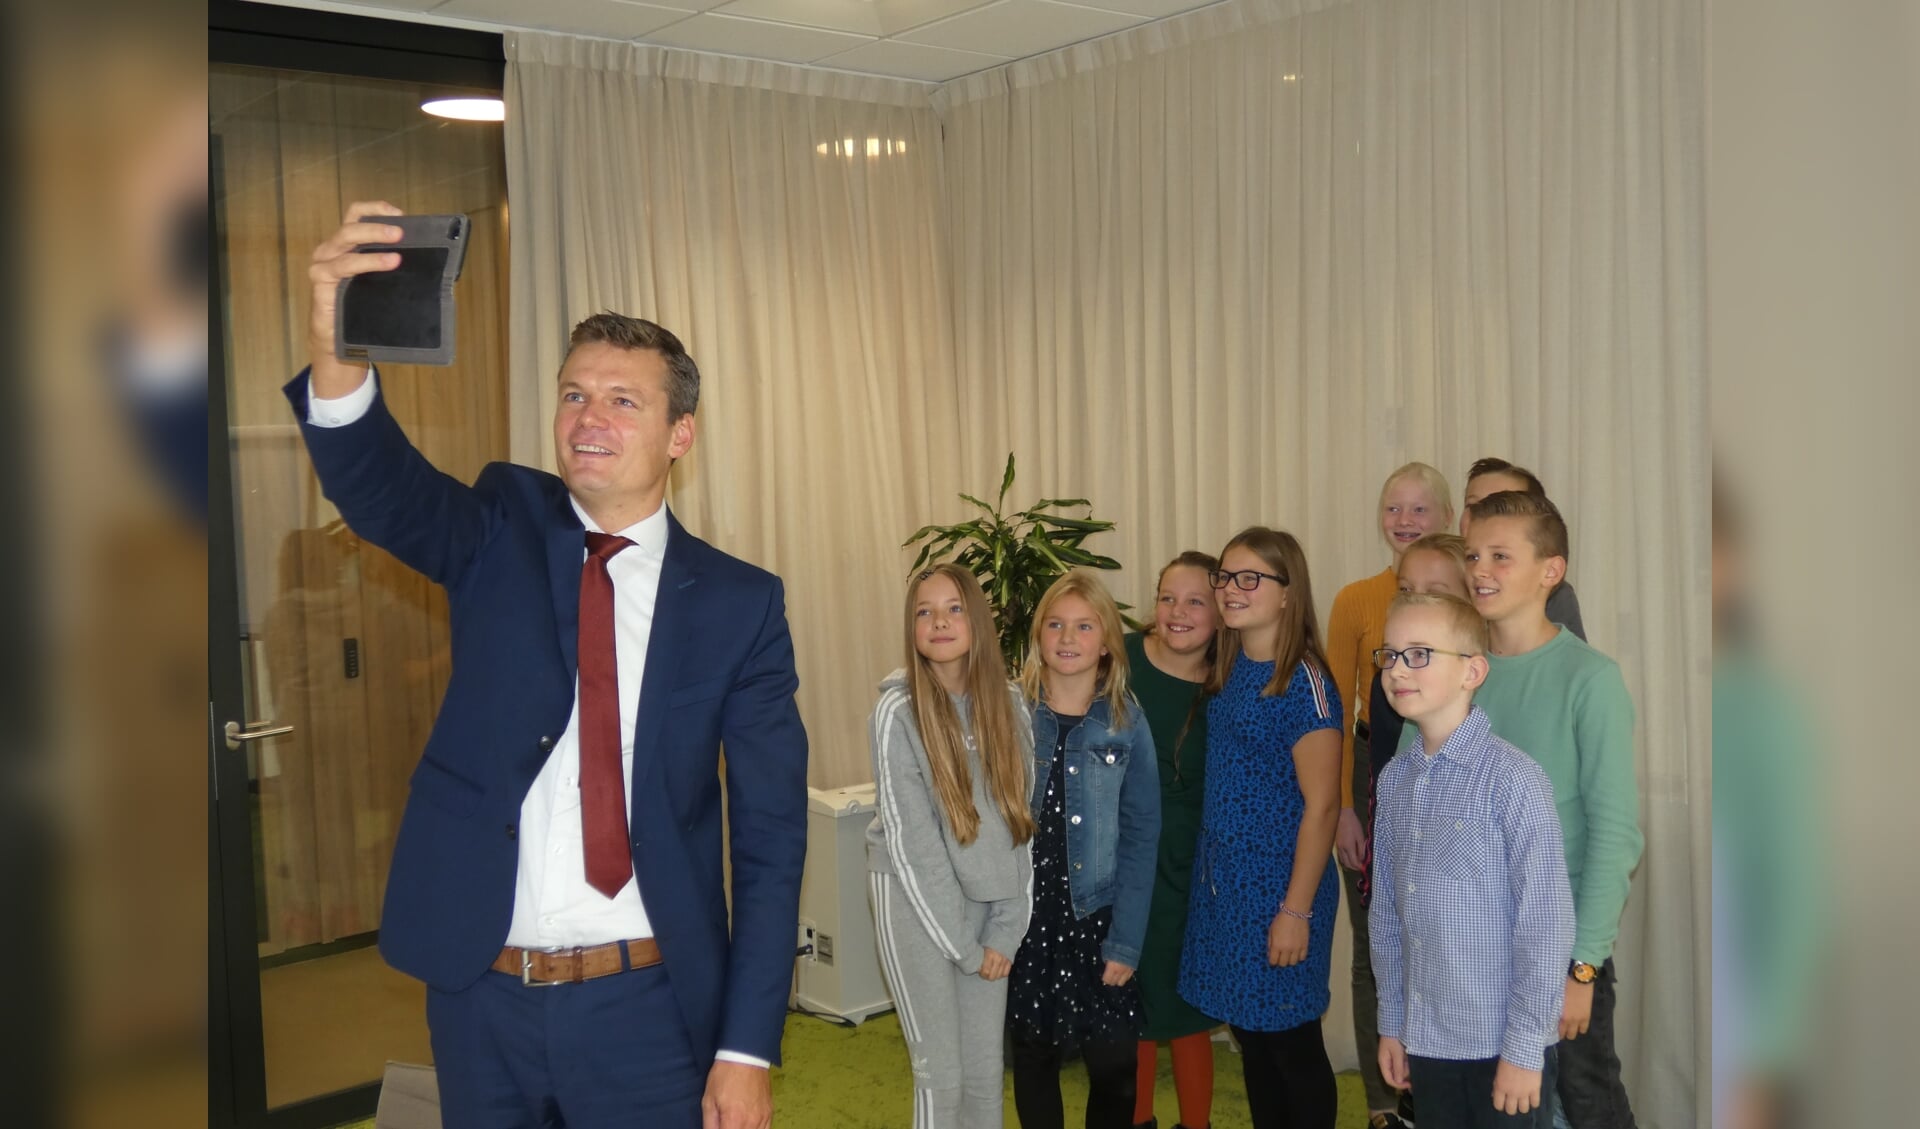 De burgemeester liet de kans niet voorbij gaan om een selfie te maken met de achtstegroepers. 